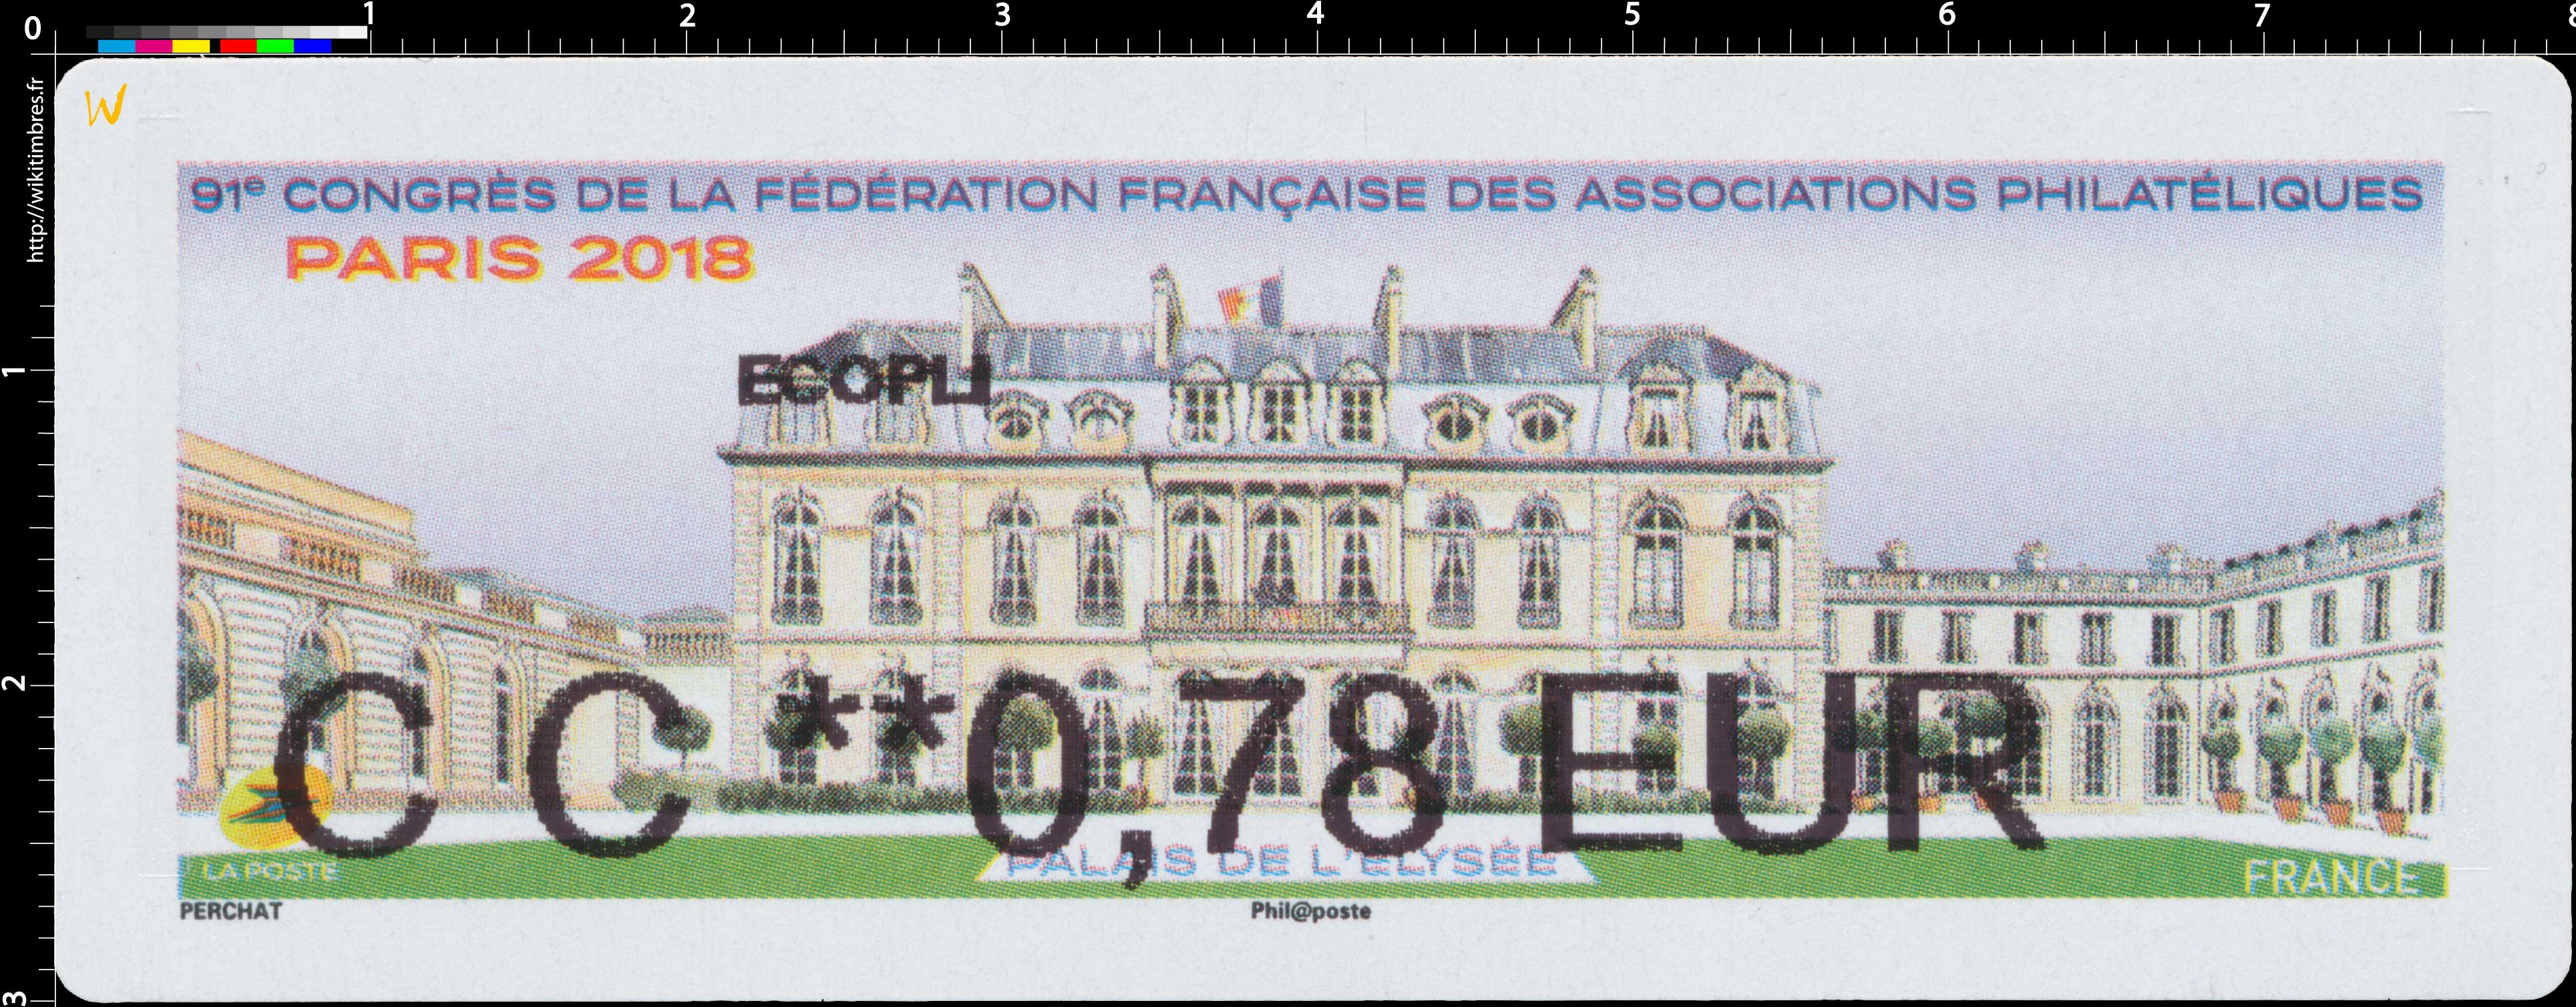 2018 91e Congrès de la Fédération Française des Associations Philatéliques - Palais de l'Elysée